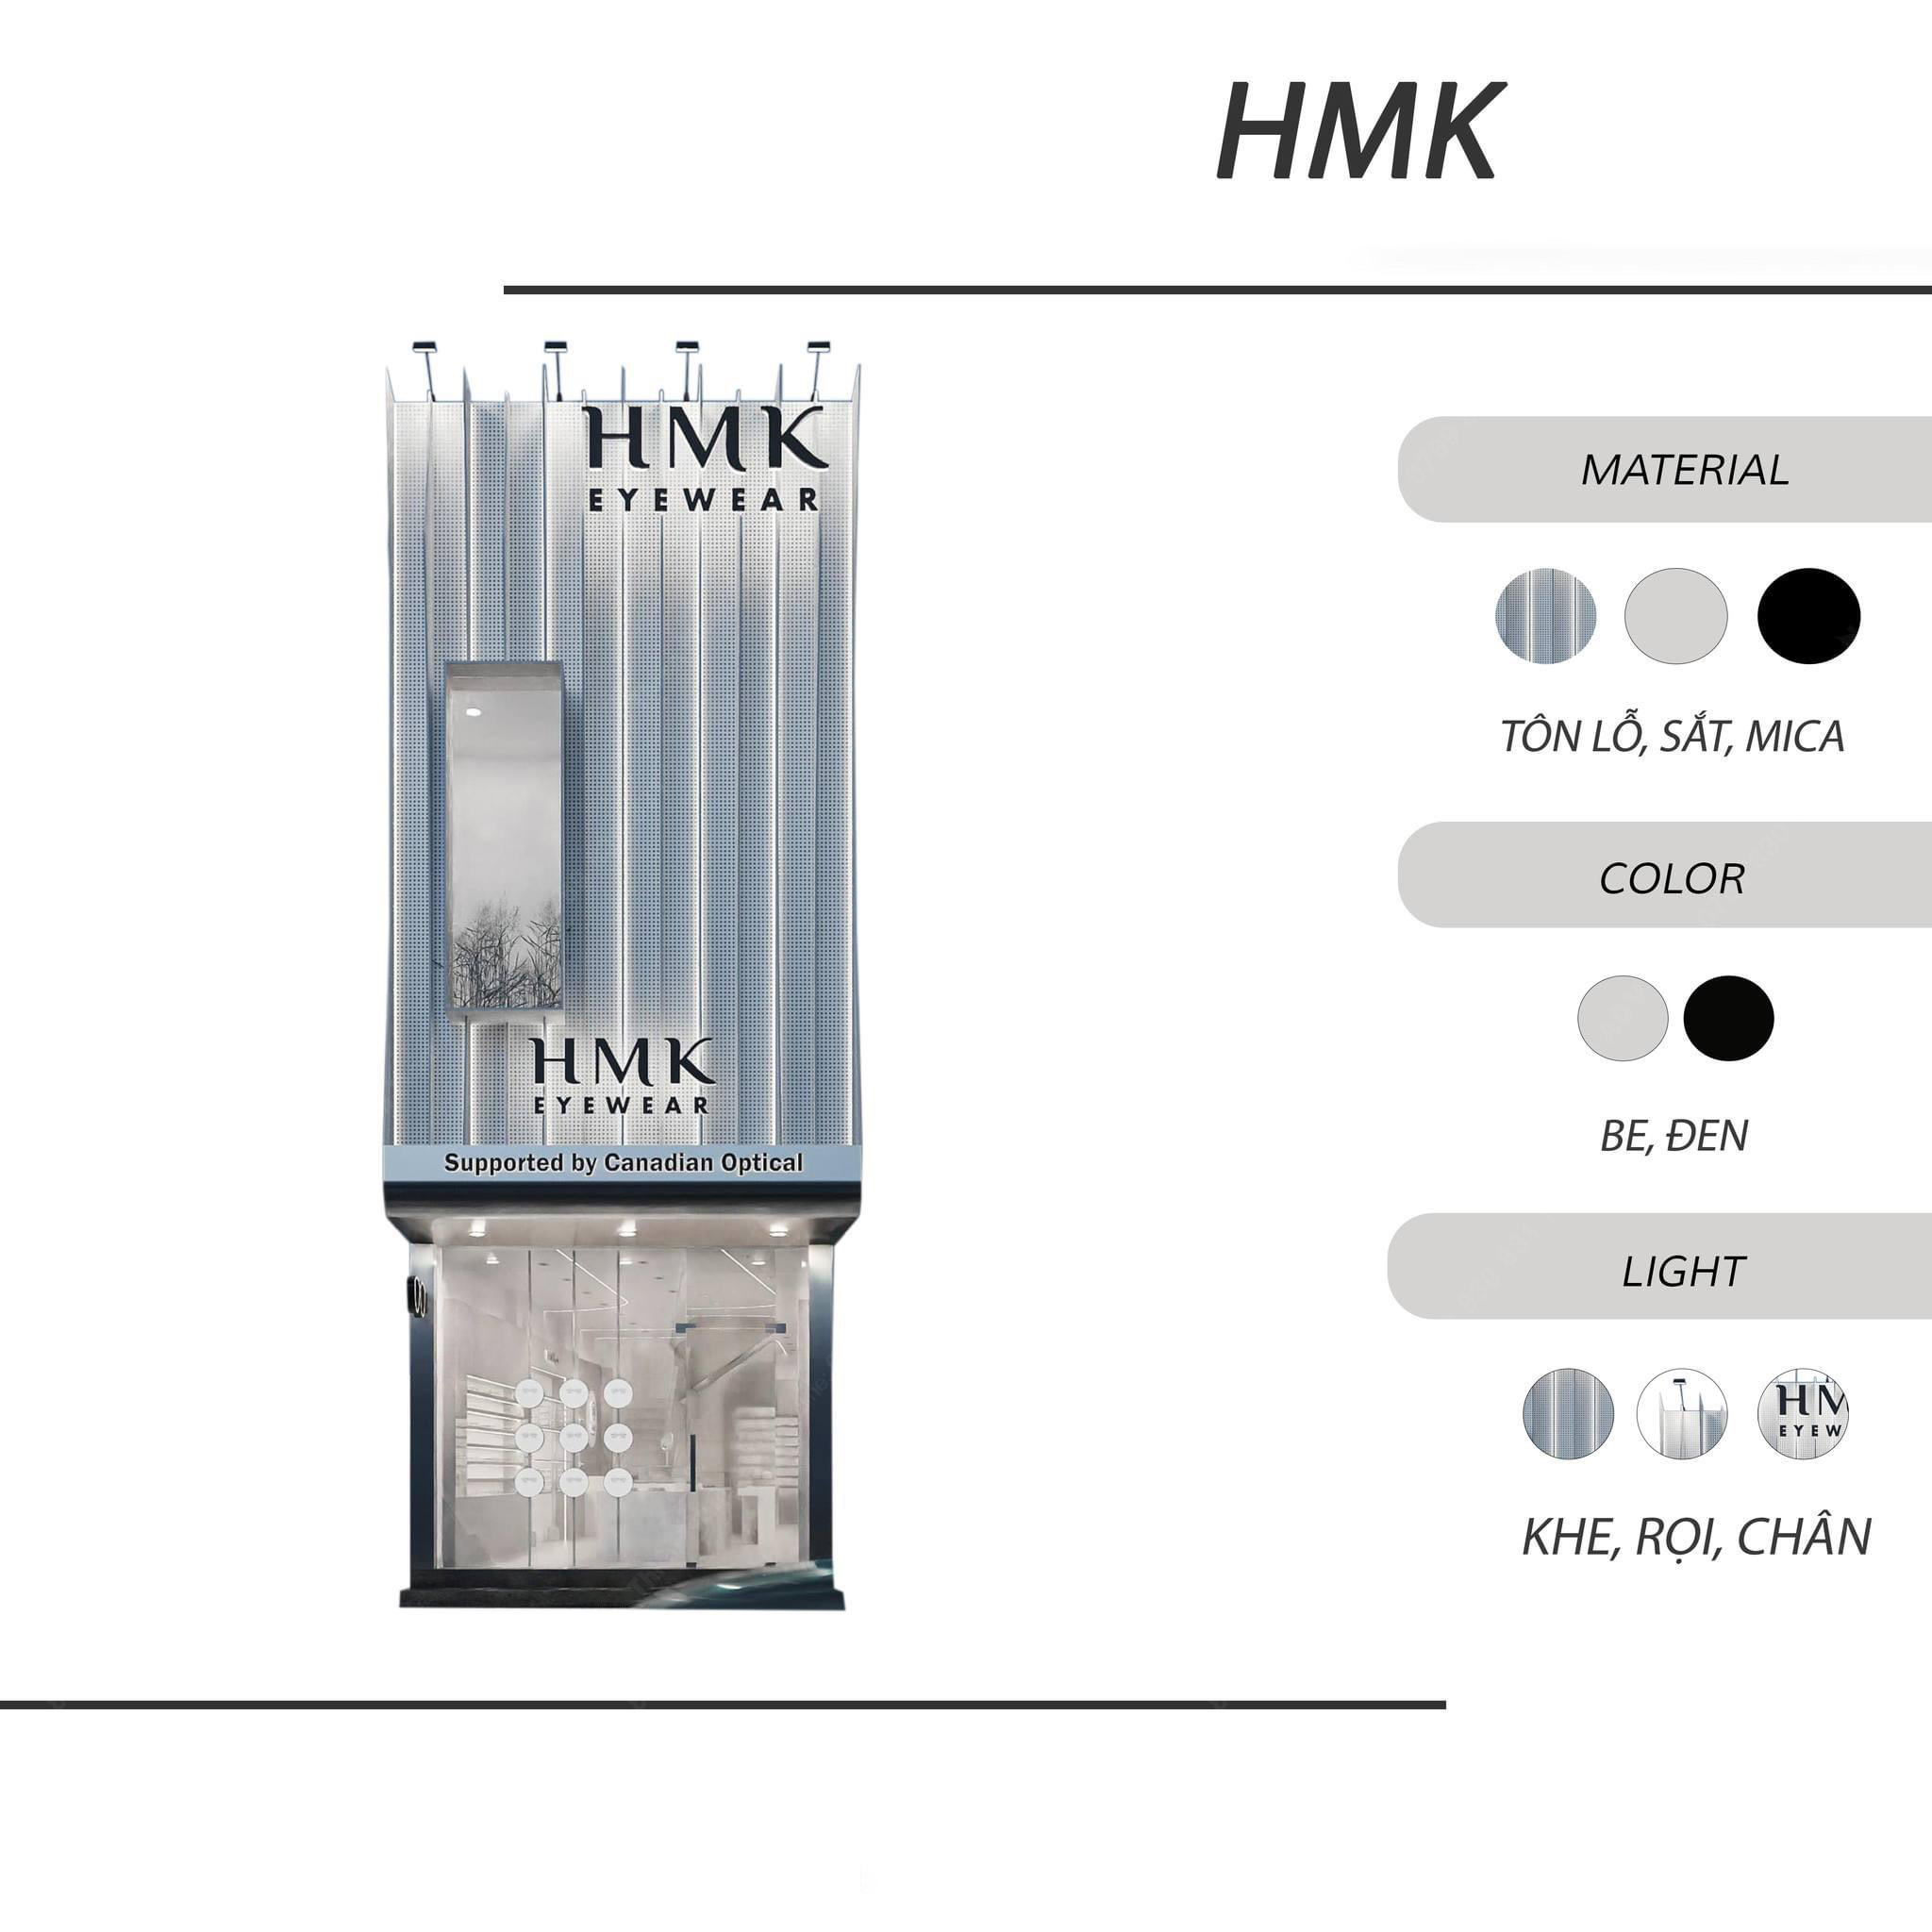 Thiết kế bảng hiệu trụ sở chính mắt kính HMK chuyên nghiệp, hiện đại